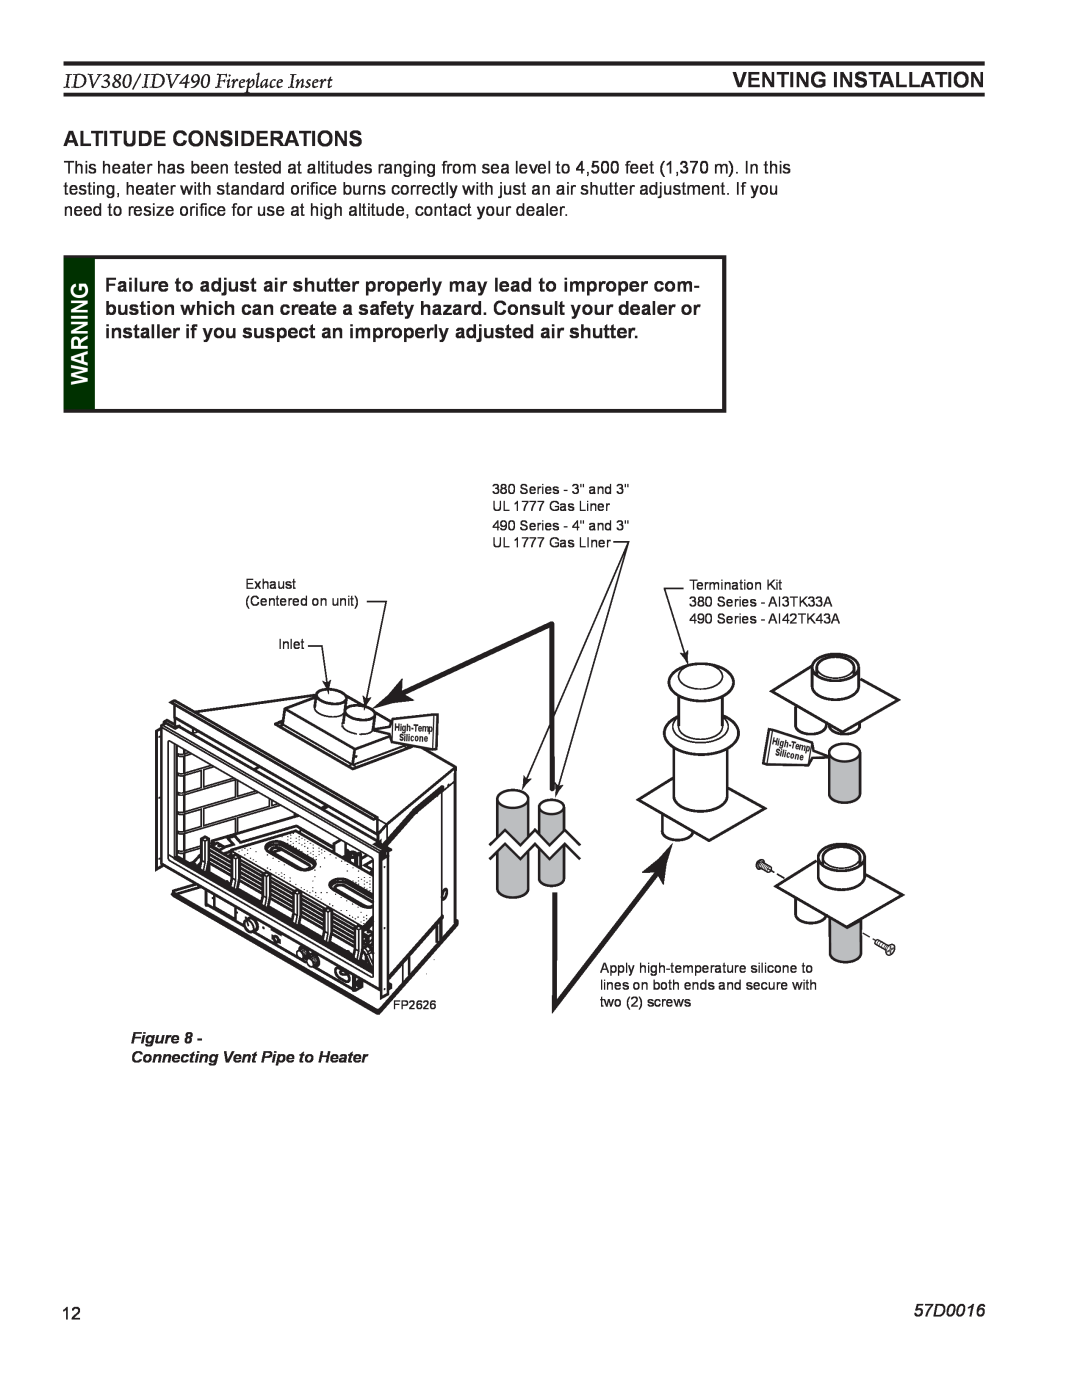 Monessen Hearth IDV490NVC manual venting installation, Altitude Considerations, IDV380/IDV490 Fireplace Insert, 57D0016 